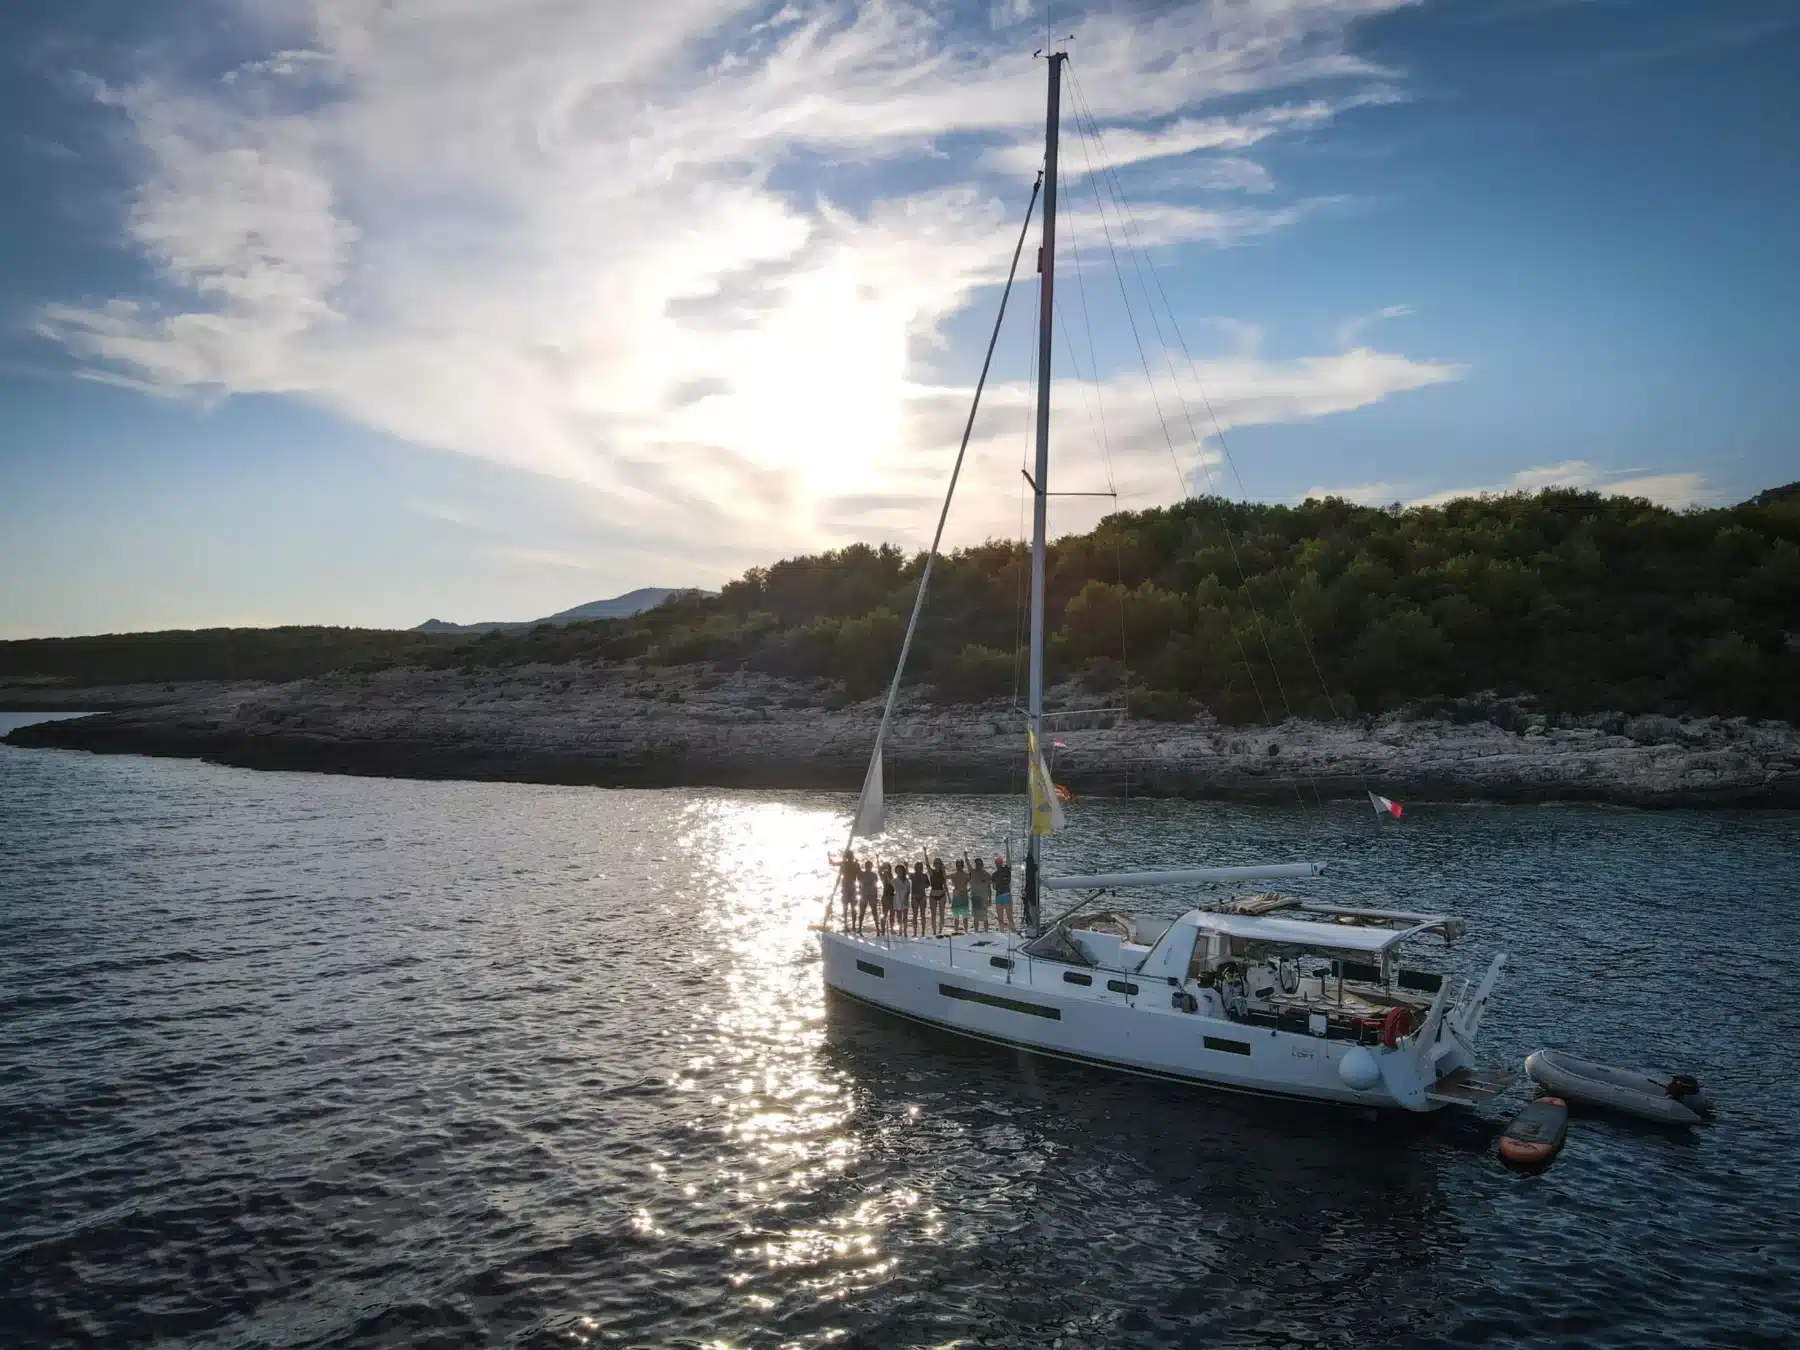 Ein Segelboot mit mehreren Personen an Bord liegt in der Nähe einer felsigen Küste vor Anker, unter einem sanften Sonnenuntergangshimmel. Hinter ihnen zieht ein kleines Schlauchboot auf ihrer Segelreise her.